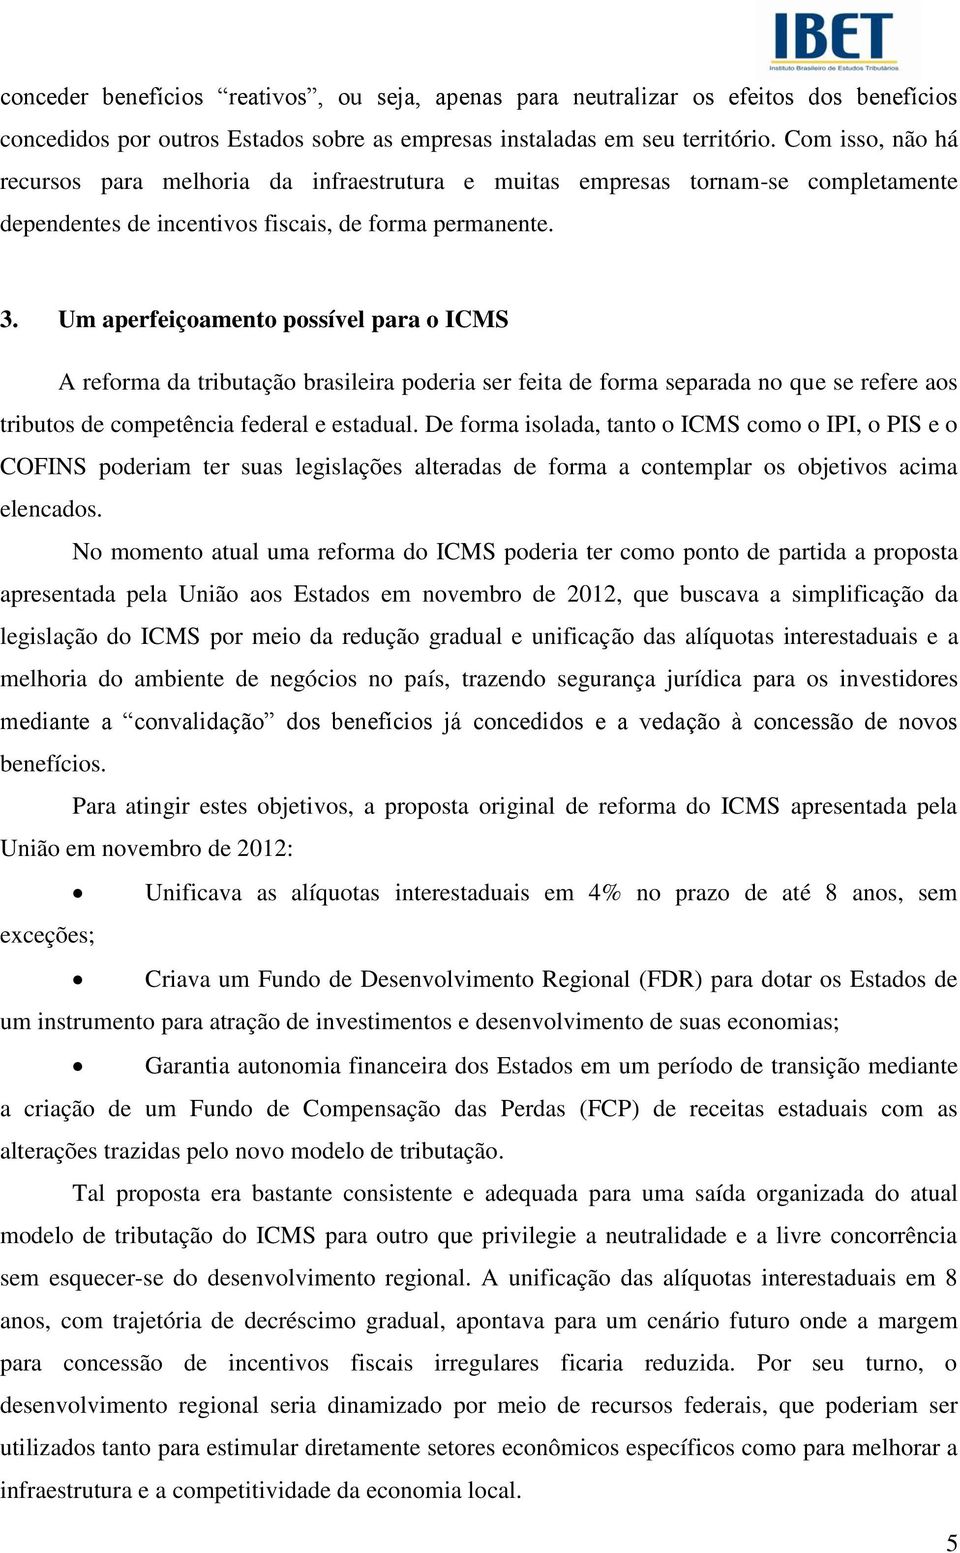 Um aperfeiçoamento possível para o ICMS A reforma da tributação brasileira poderia ser feita de forma separada no que se refere aos tributos de competência federal e estadual.